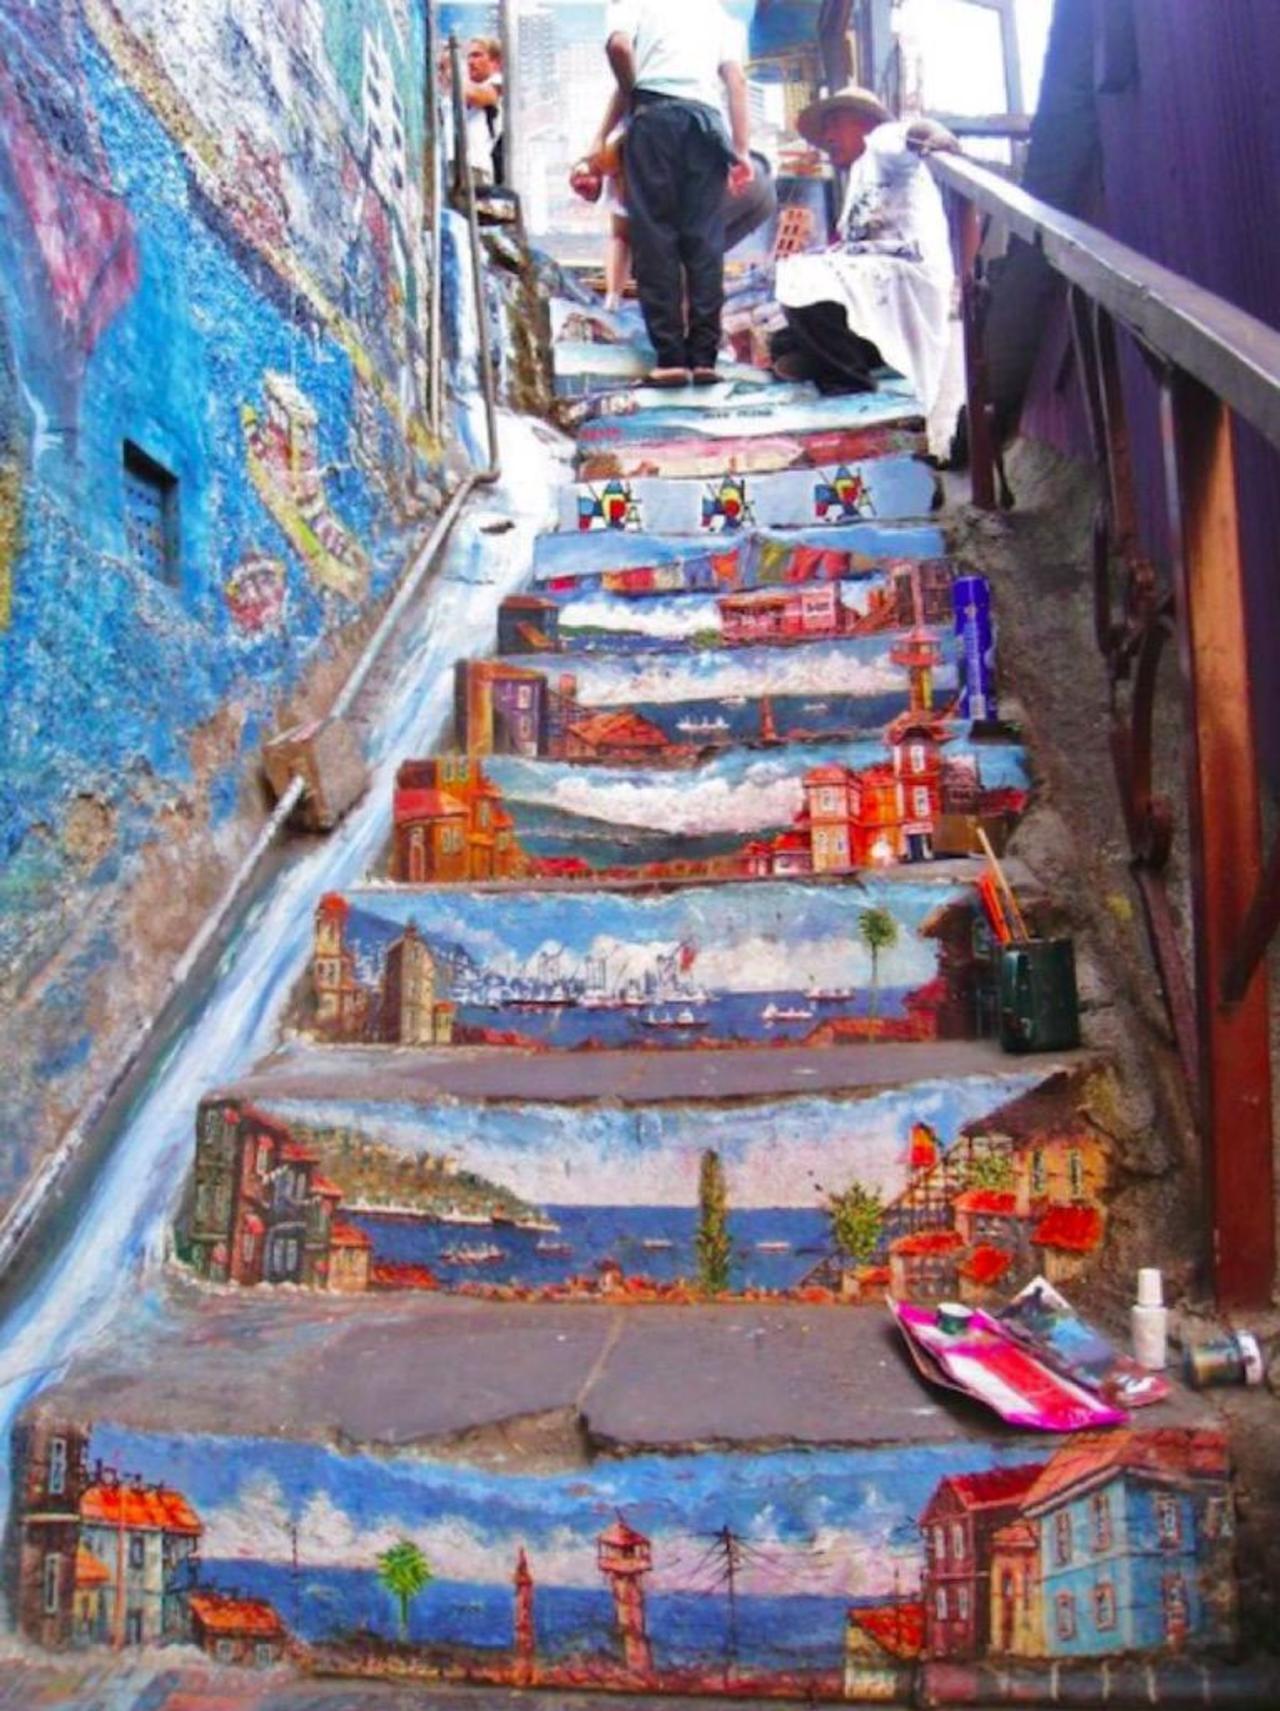 RT @richardbanfa: #switch stairs into #colourful #streetart #Chile #bedifferent #graffiti #arte #art http://t.co/ACNJI2Axan